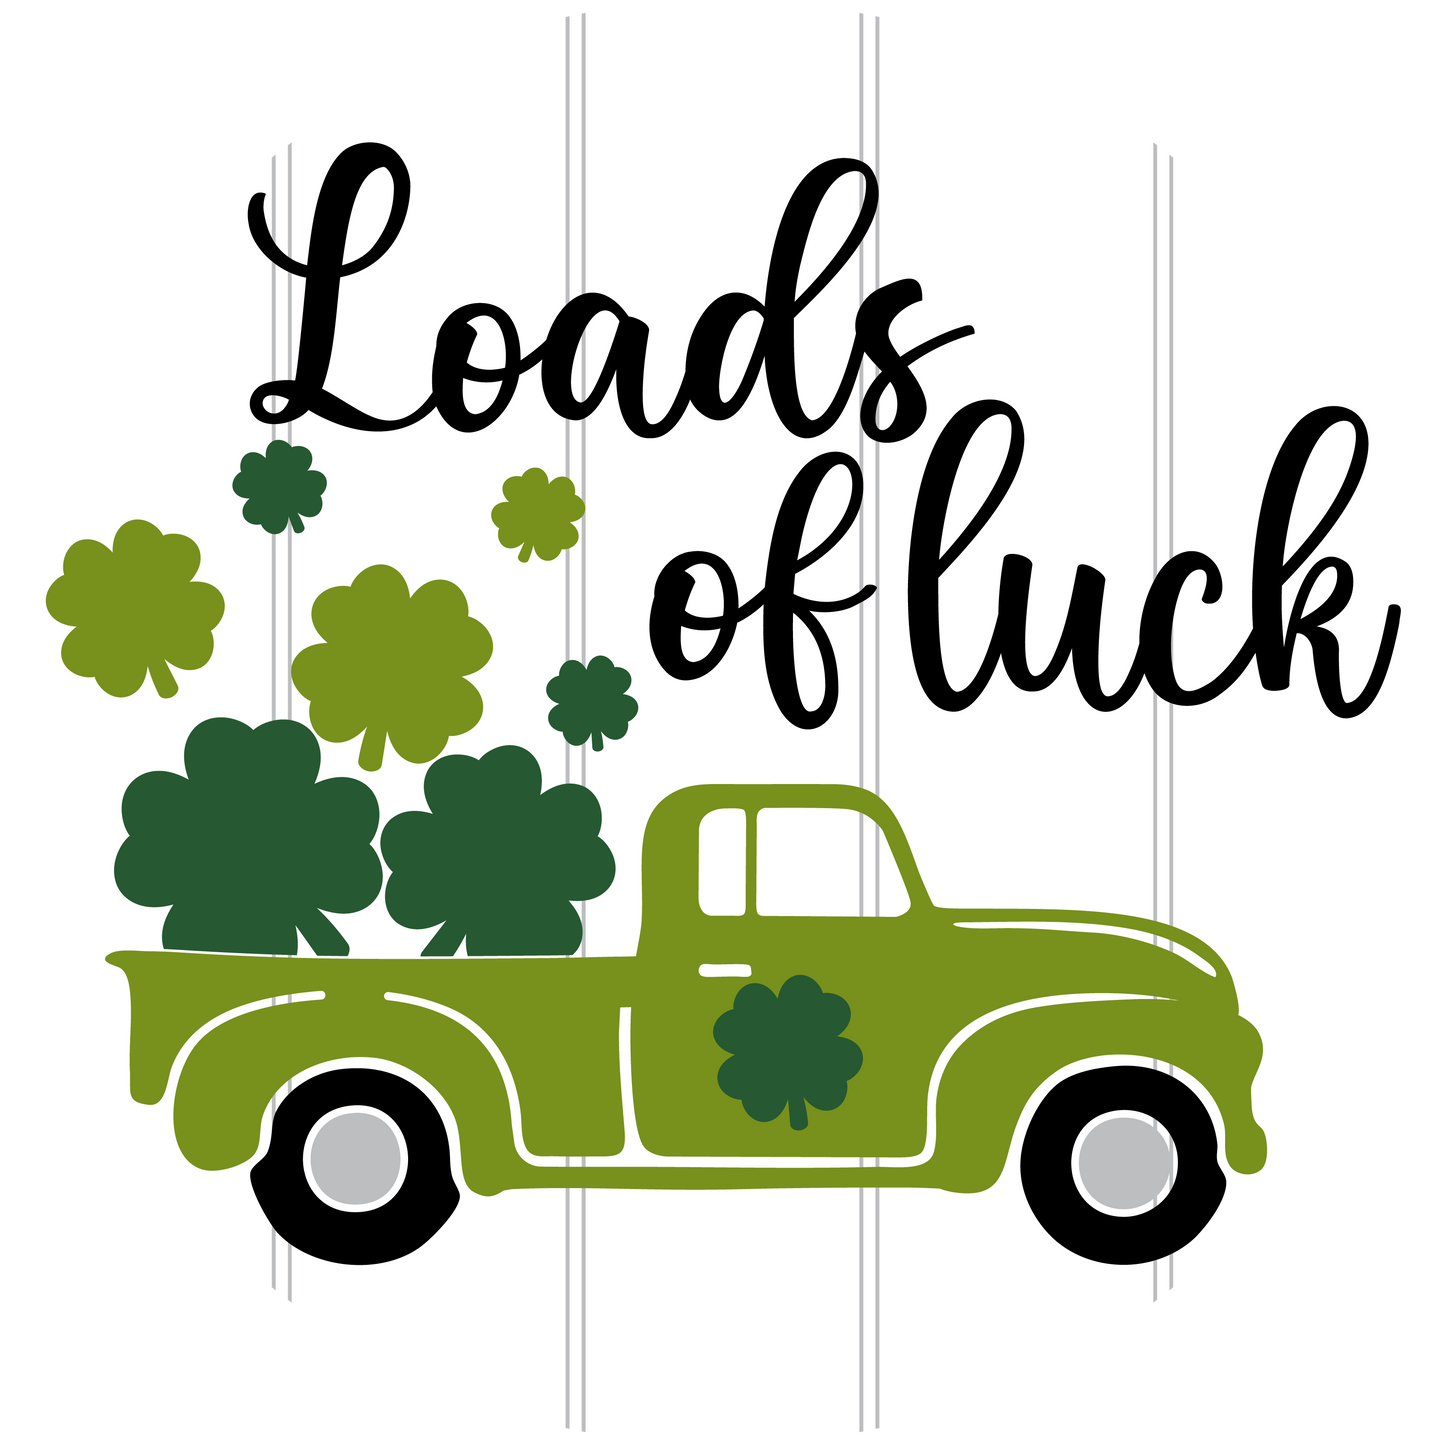 Loads of Luck St. Patrick's Door Hanger